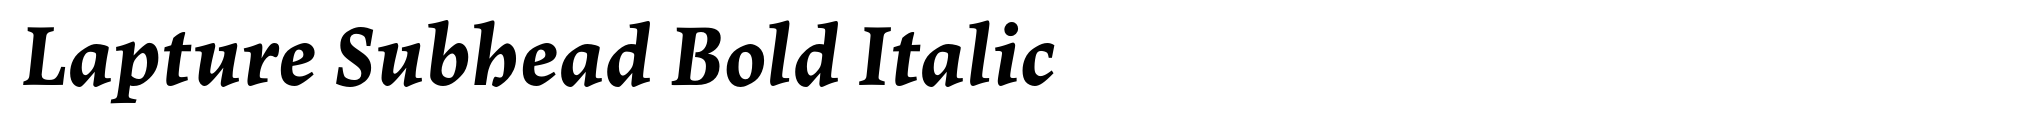 Lapture Subhead Bold Italic image